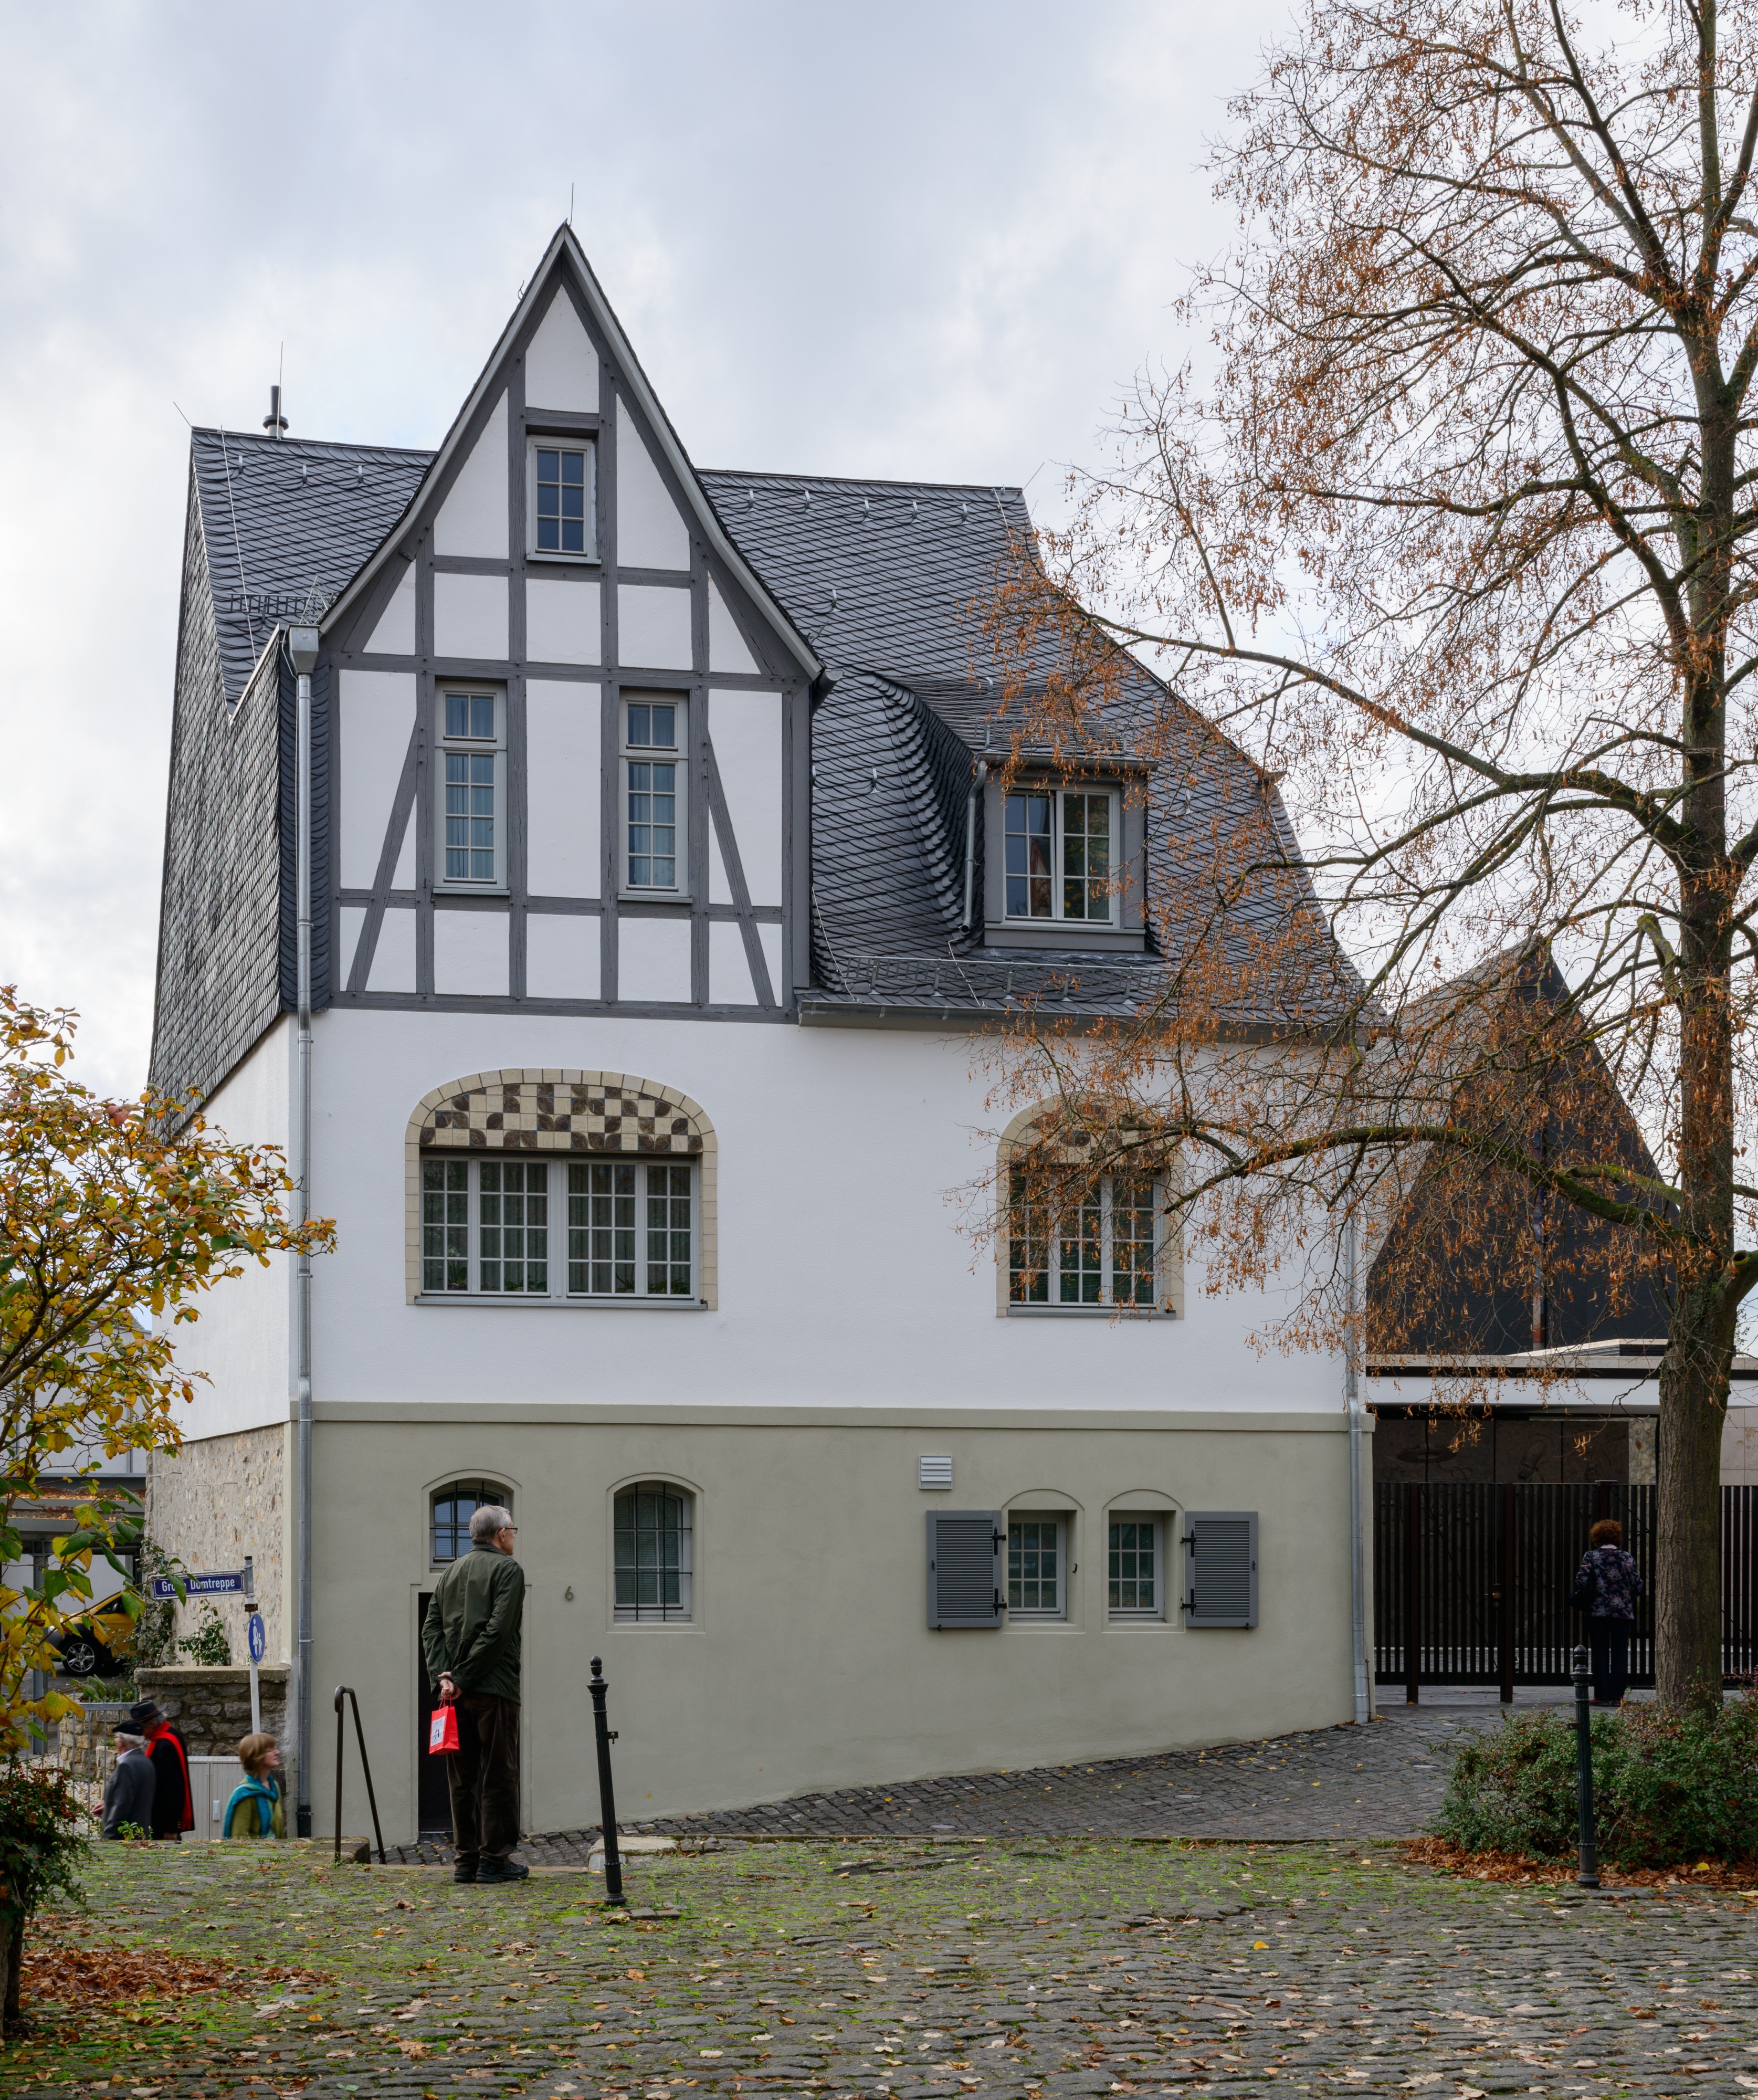 Bischofssitz Limburg - Residence of the bishop of Limburg - Schwesternhaus - October 26th 2013 - 02